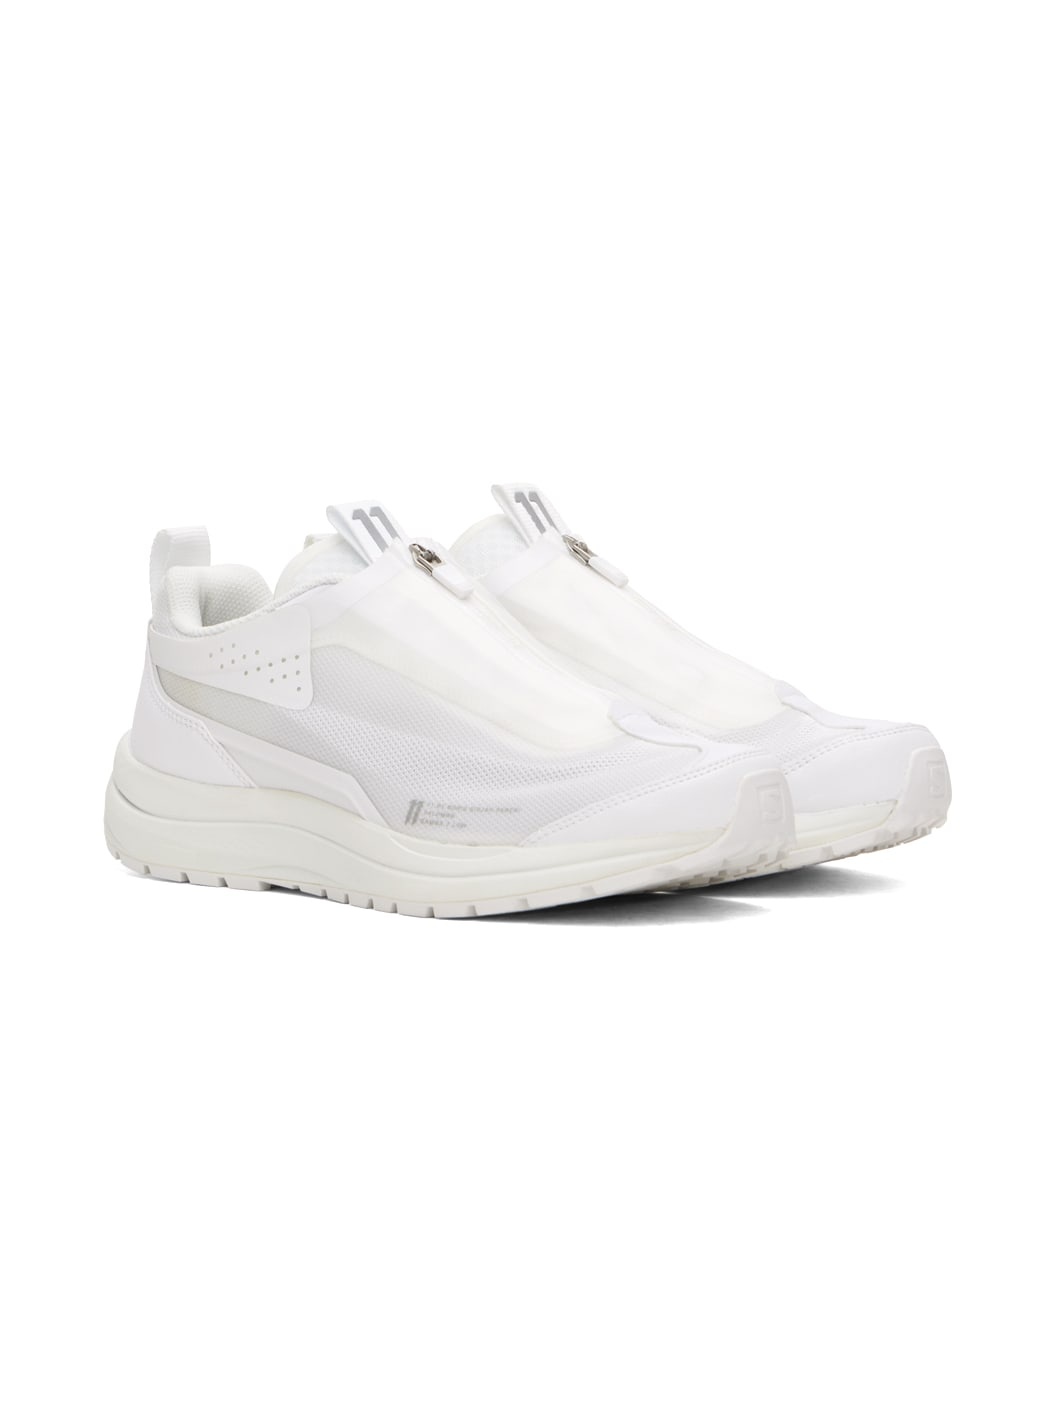 White Salomon Edition Bamba 2 Low Sneakers - 4